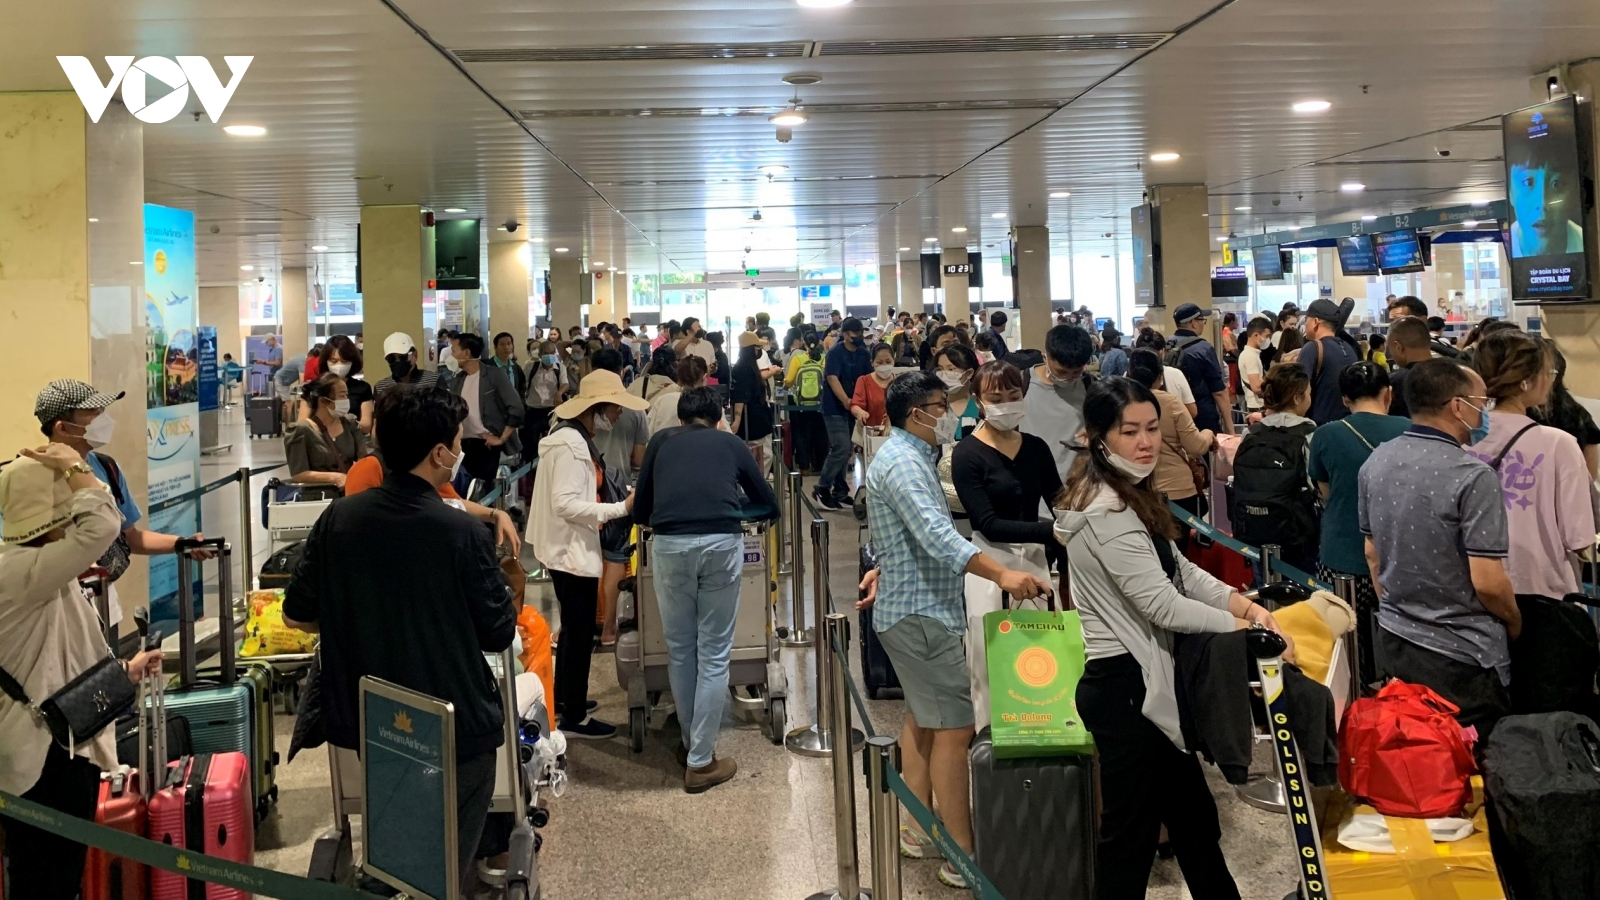 Mùng 3 Tết, khách đi sân bay Tân Sơn Nhất tăng kỷ lục